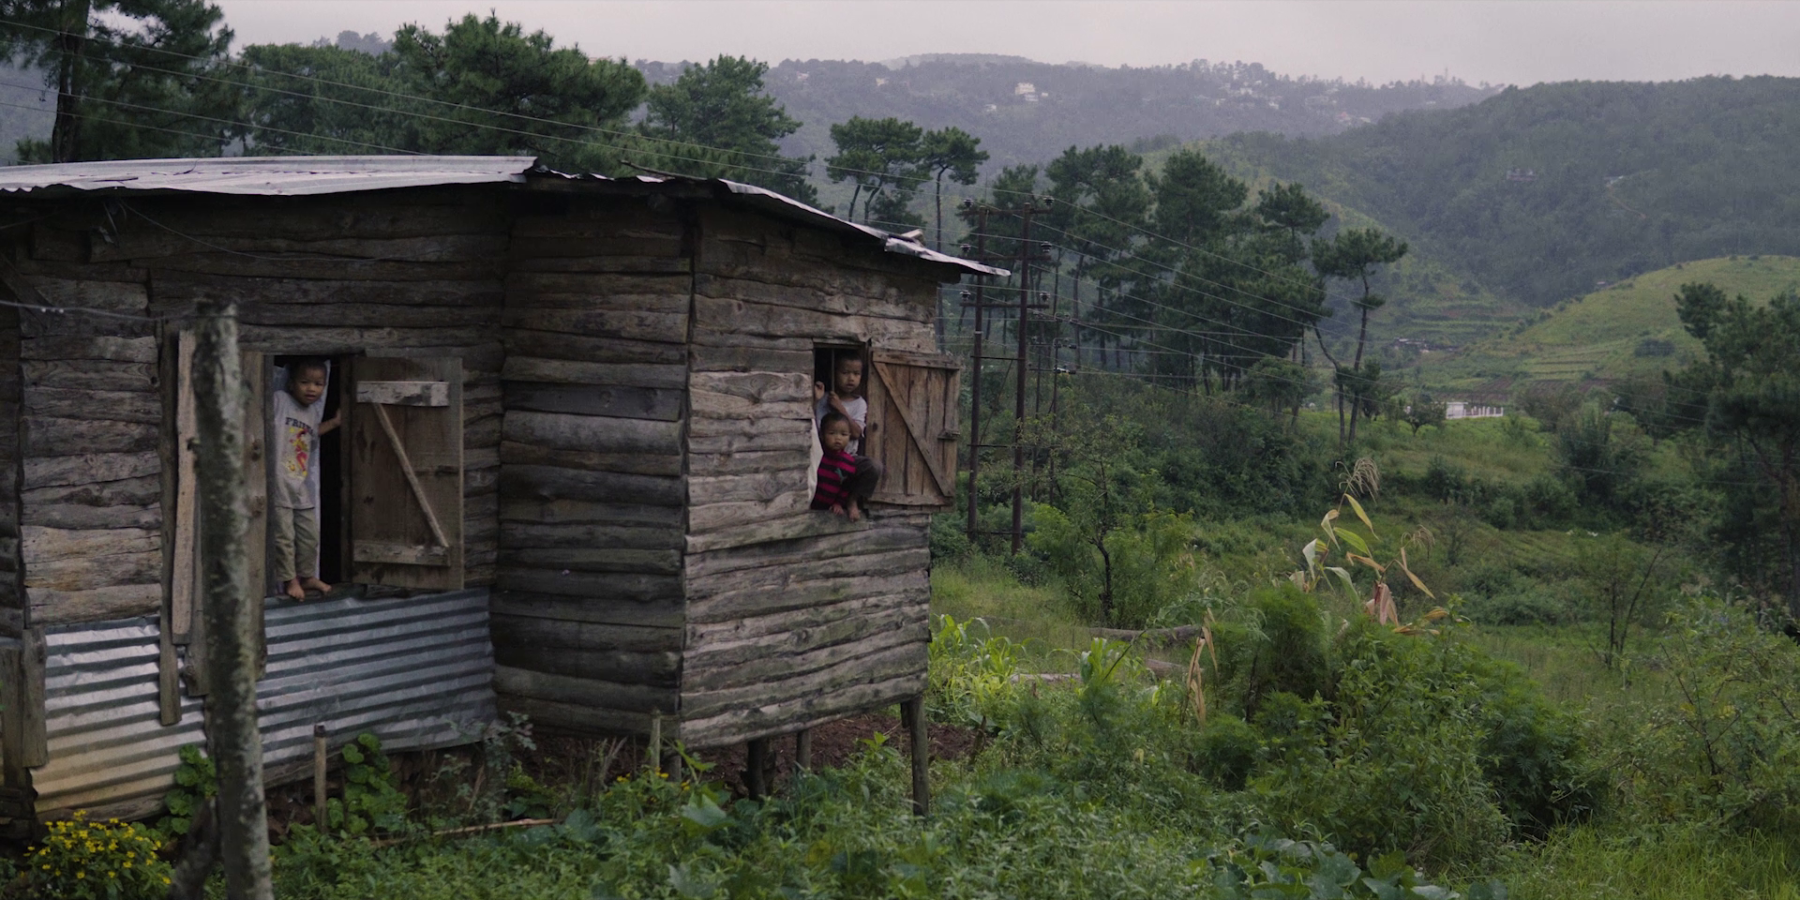 Kinder in einem Holzhaus in Indien. Imagefilm Bild für eine NGO / NRO